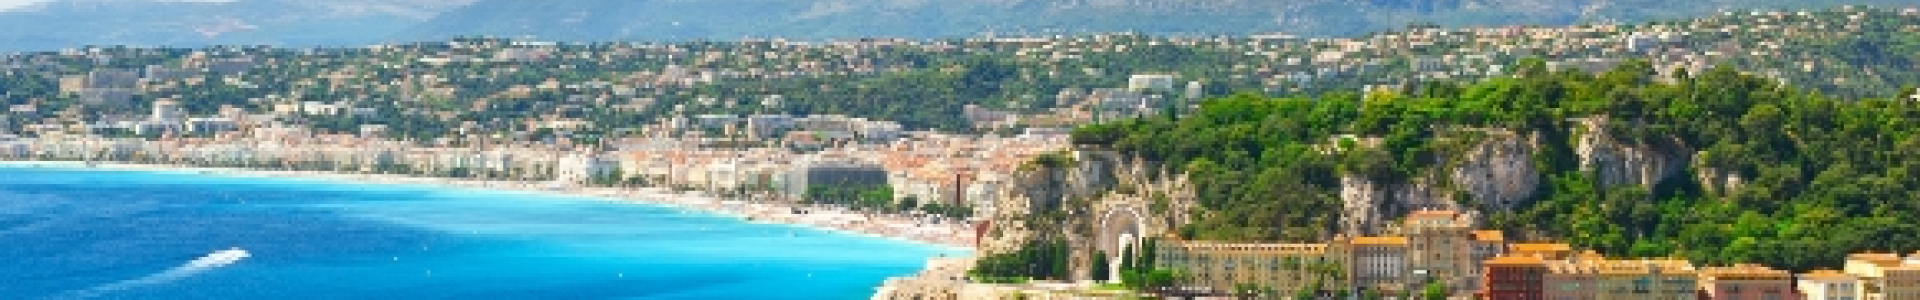 Voyage Privé : ventes flash week-ends en Provence et Côte d'Azur en 4*, jusqu'à - 69%